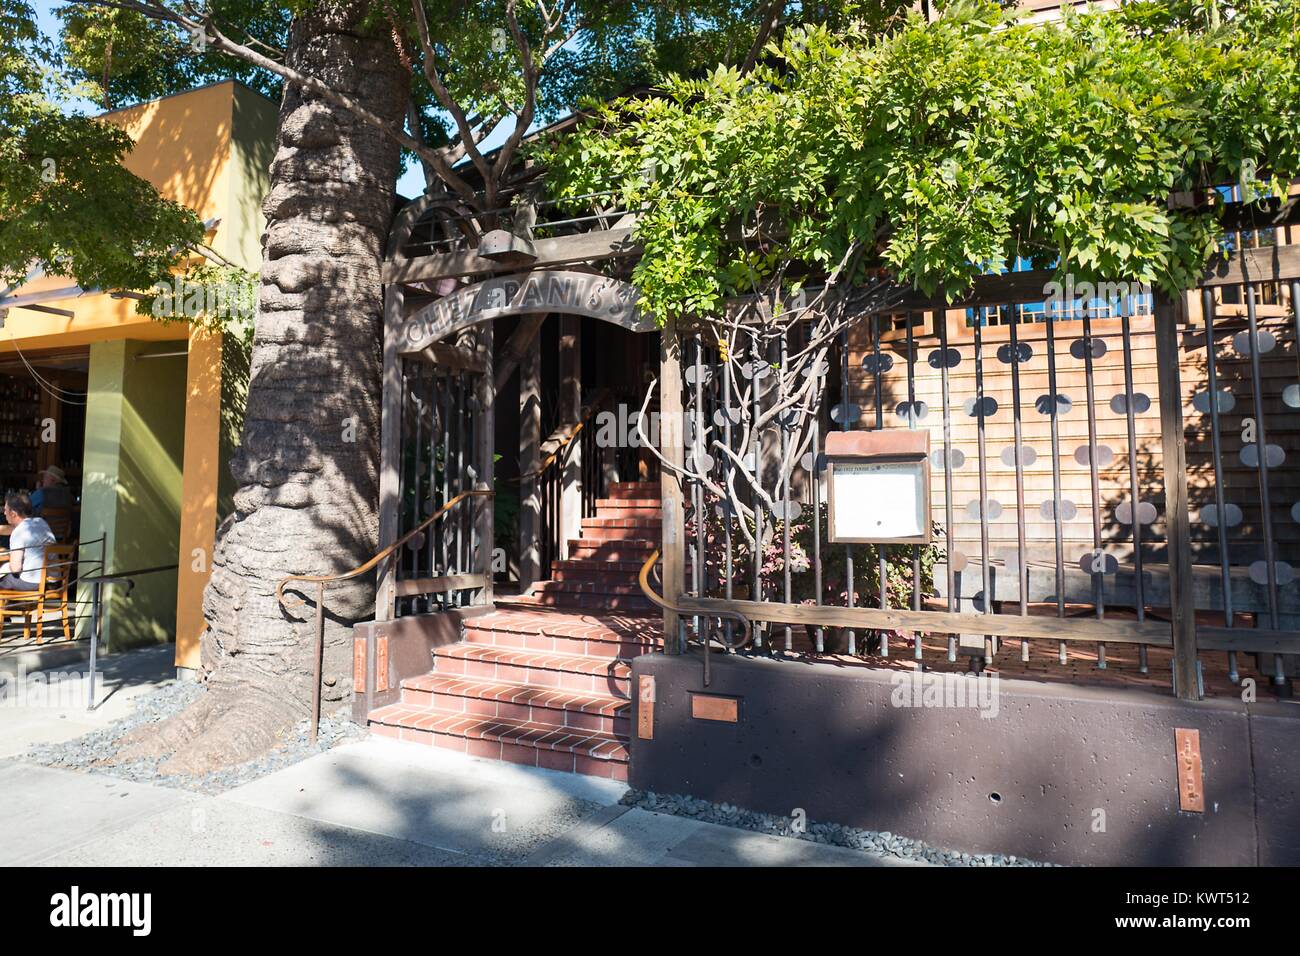 Fassade der Chez Panisse, das Flaggschiff Restaurant von Ikonischen restaurateur Alice Waters, der oft mit Beginn der Kalifornische Küche und neue American Food Bewegungen gutgeschrieben, in der Gourmet Ghetto (Norden Shattuck) Nachbarschaft von Berkeley, Kalifornien, 6. Oktober 2017. () Stockfoto